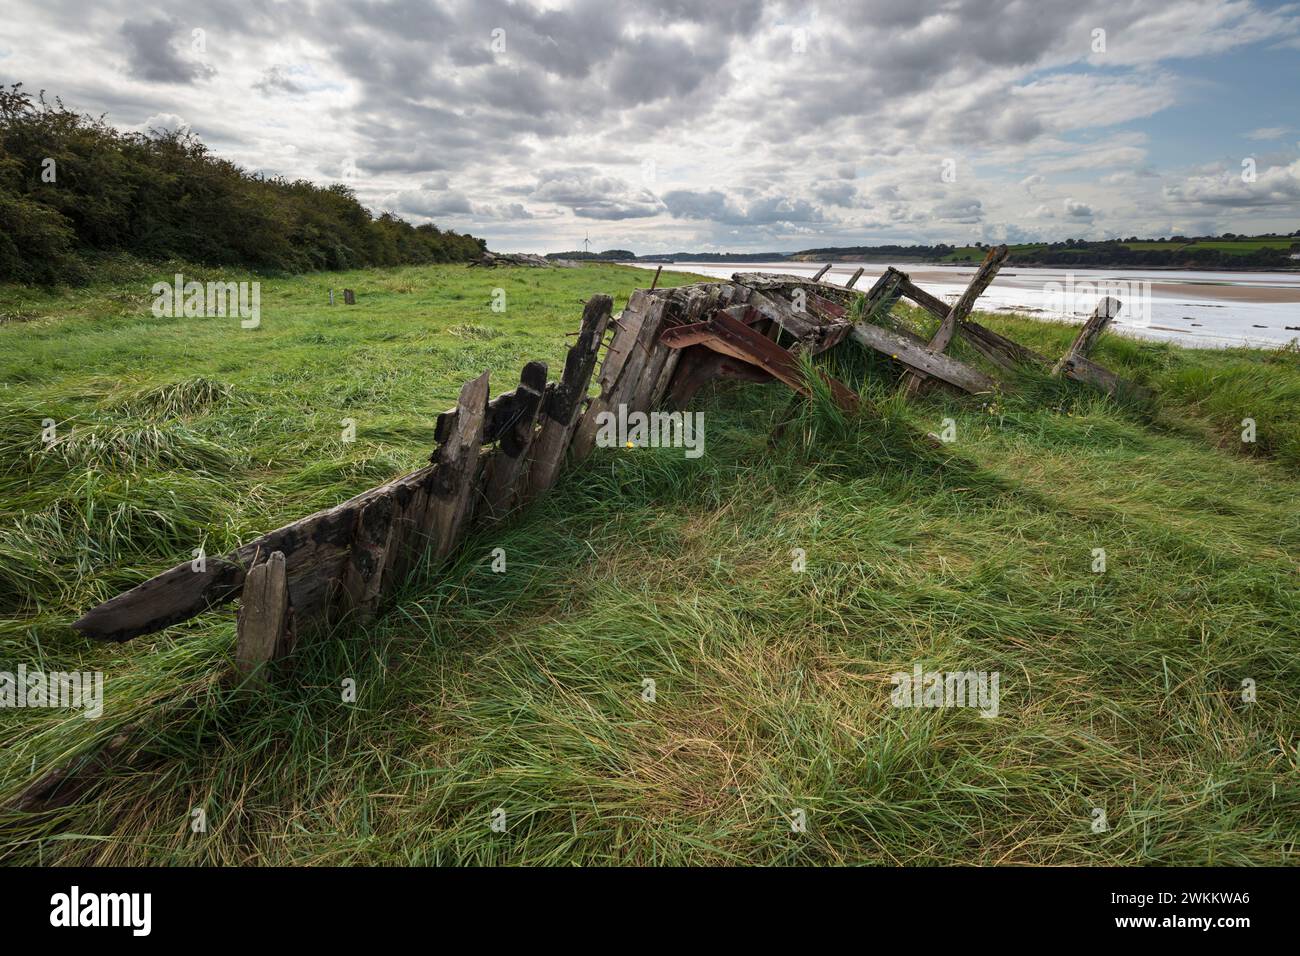 Coques en bois pourries de navires échouées sur les rives de la rivière Severn pour éviter l'érosion au cimetière Purton Ship, Purton, Gloucestershire, Royaume-Uni Banque D'Images